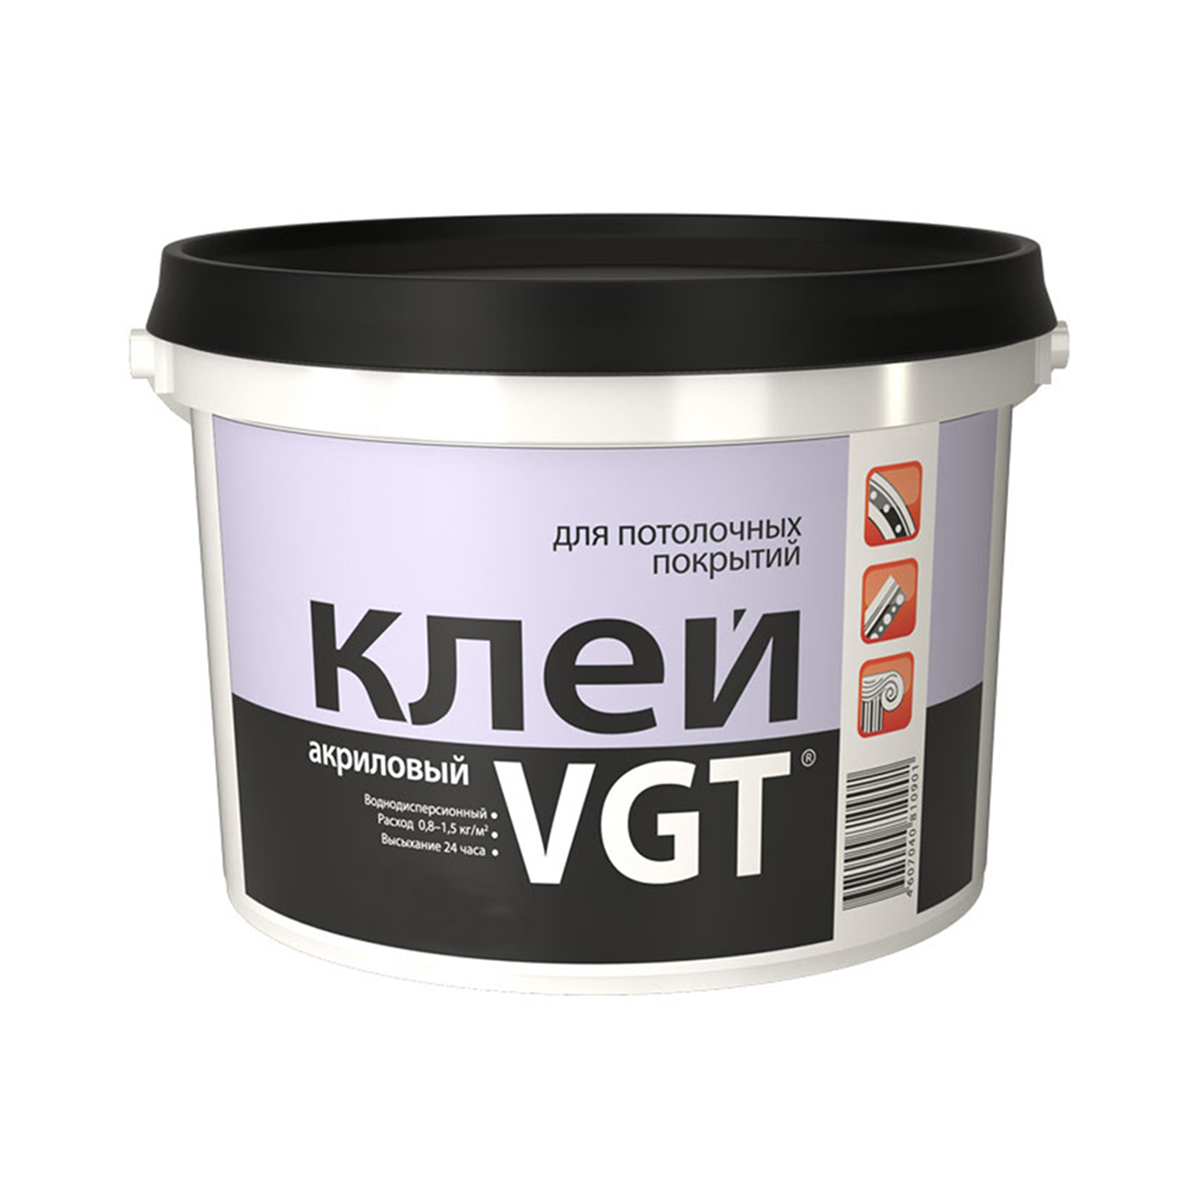 Клей для потолочных покрытий VGT, акриловый, 0,5 кг клей для потолочных плит лакра